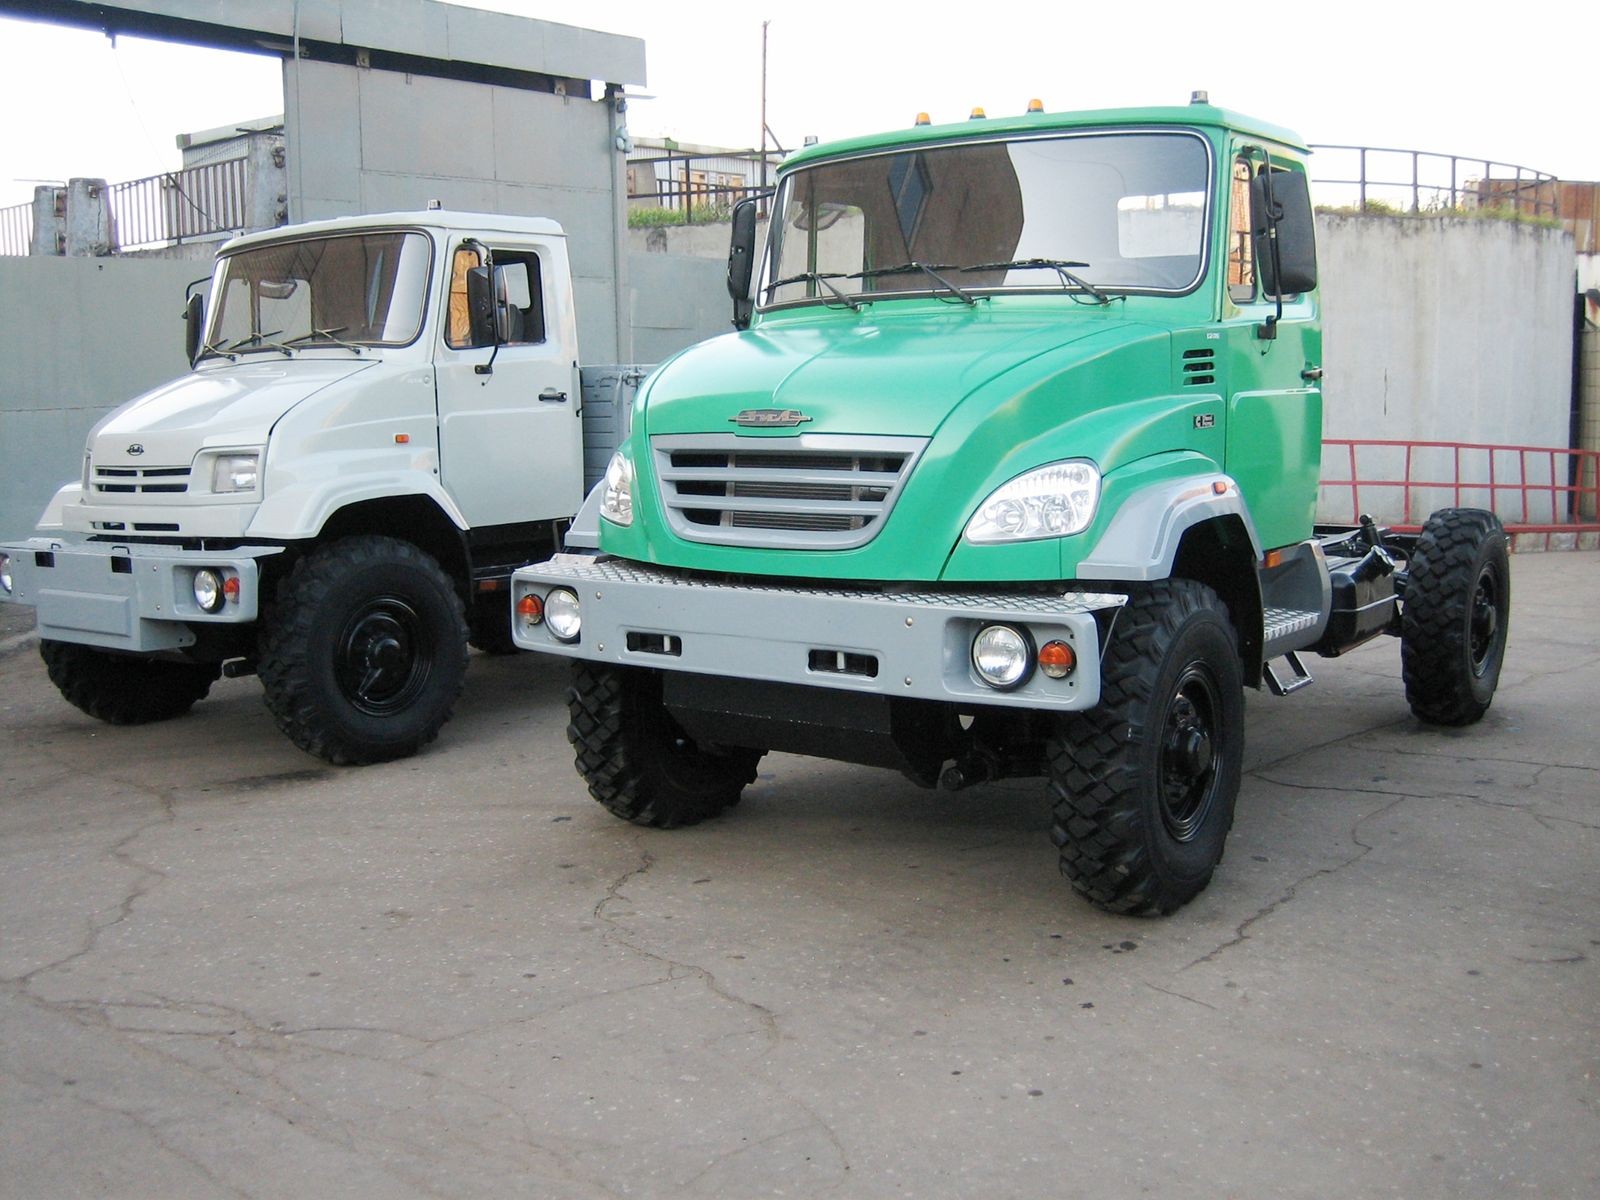 Стой, «Синяя птица»: первый в мире грузовик с дисковыми трансмиссионными тормозами из СССР